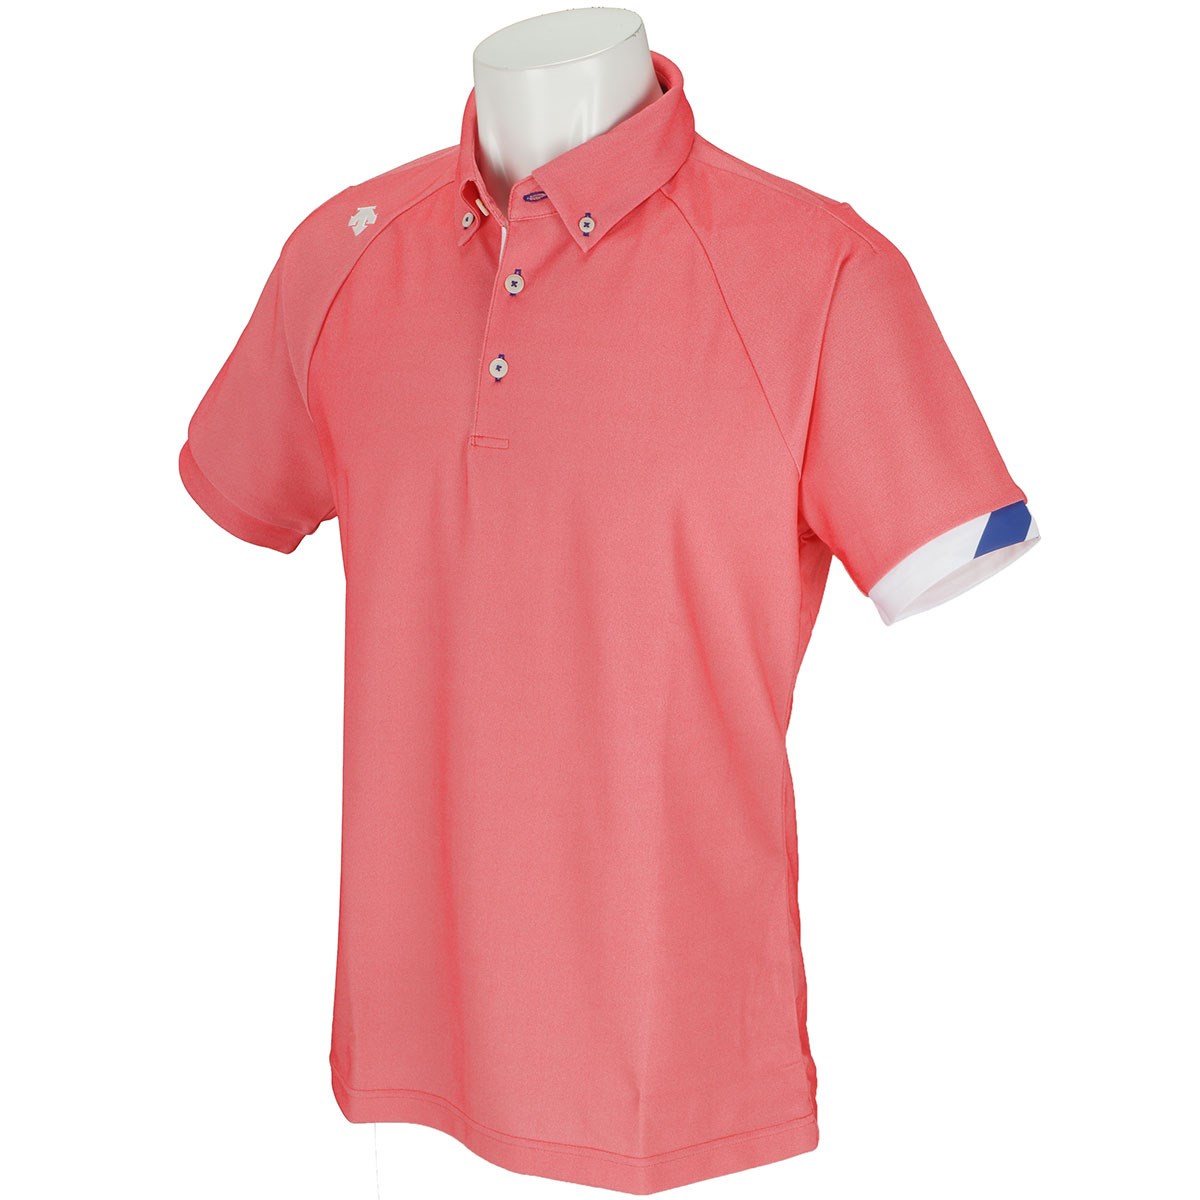 デサントゴルフ(DESCENTE GOLF) シャンブレー ボタンダウン半袖ポロシャツ 